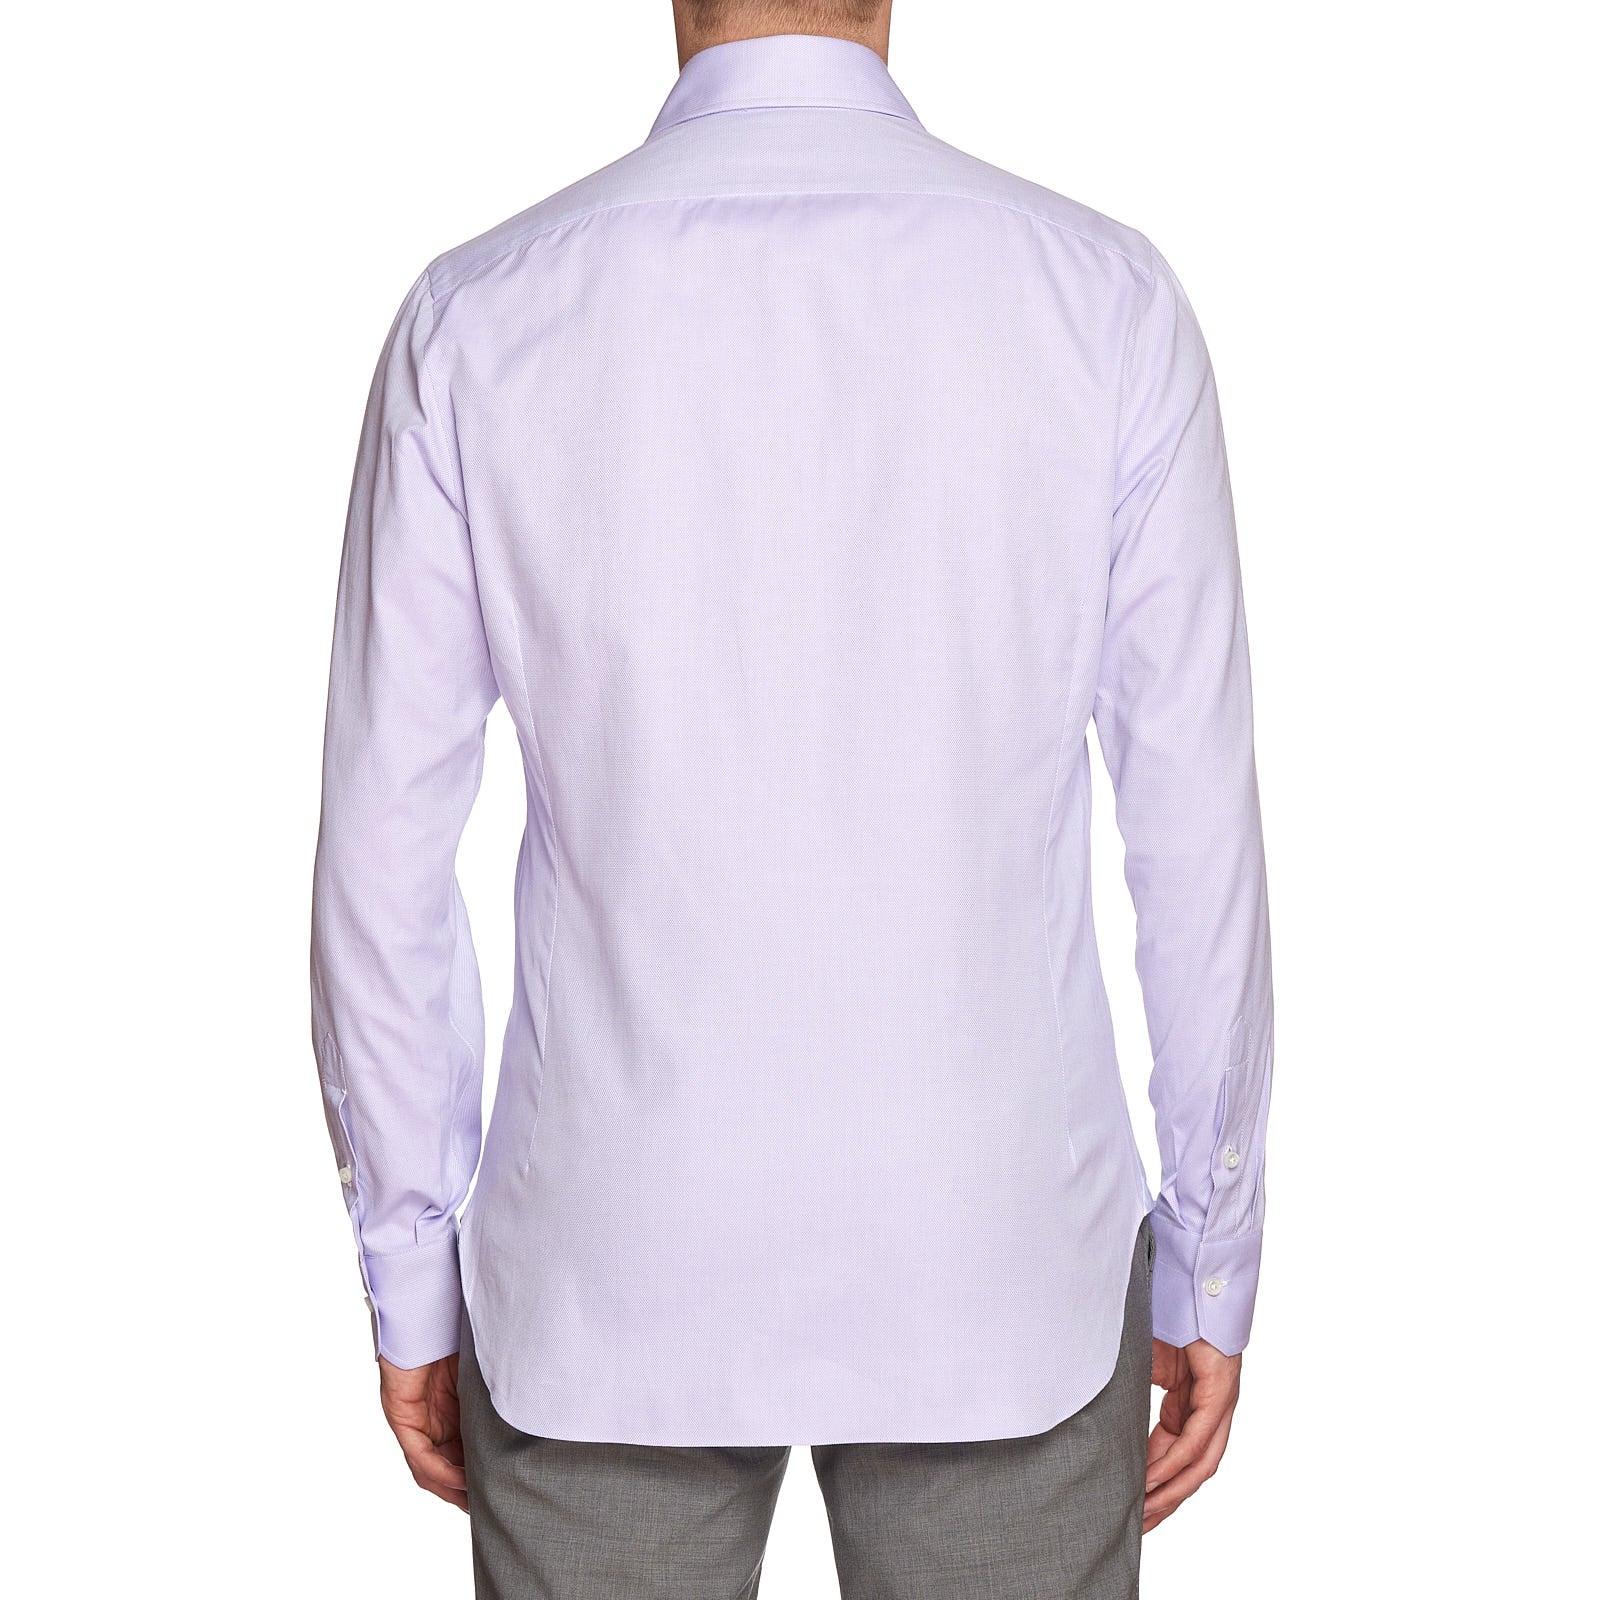 MATTABISCH by Kiton Handmade Purple Dobby Cotton Dress Shirt 39 NEW 15.5 Slim Fit MATTABISCH